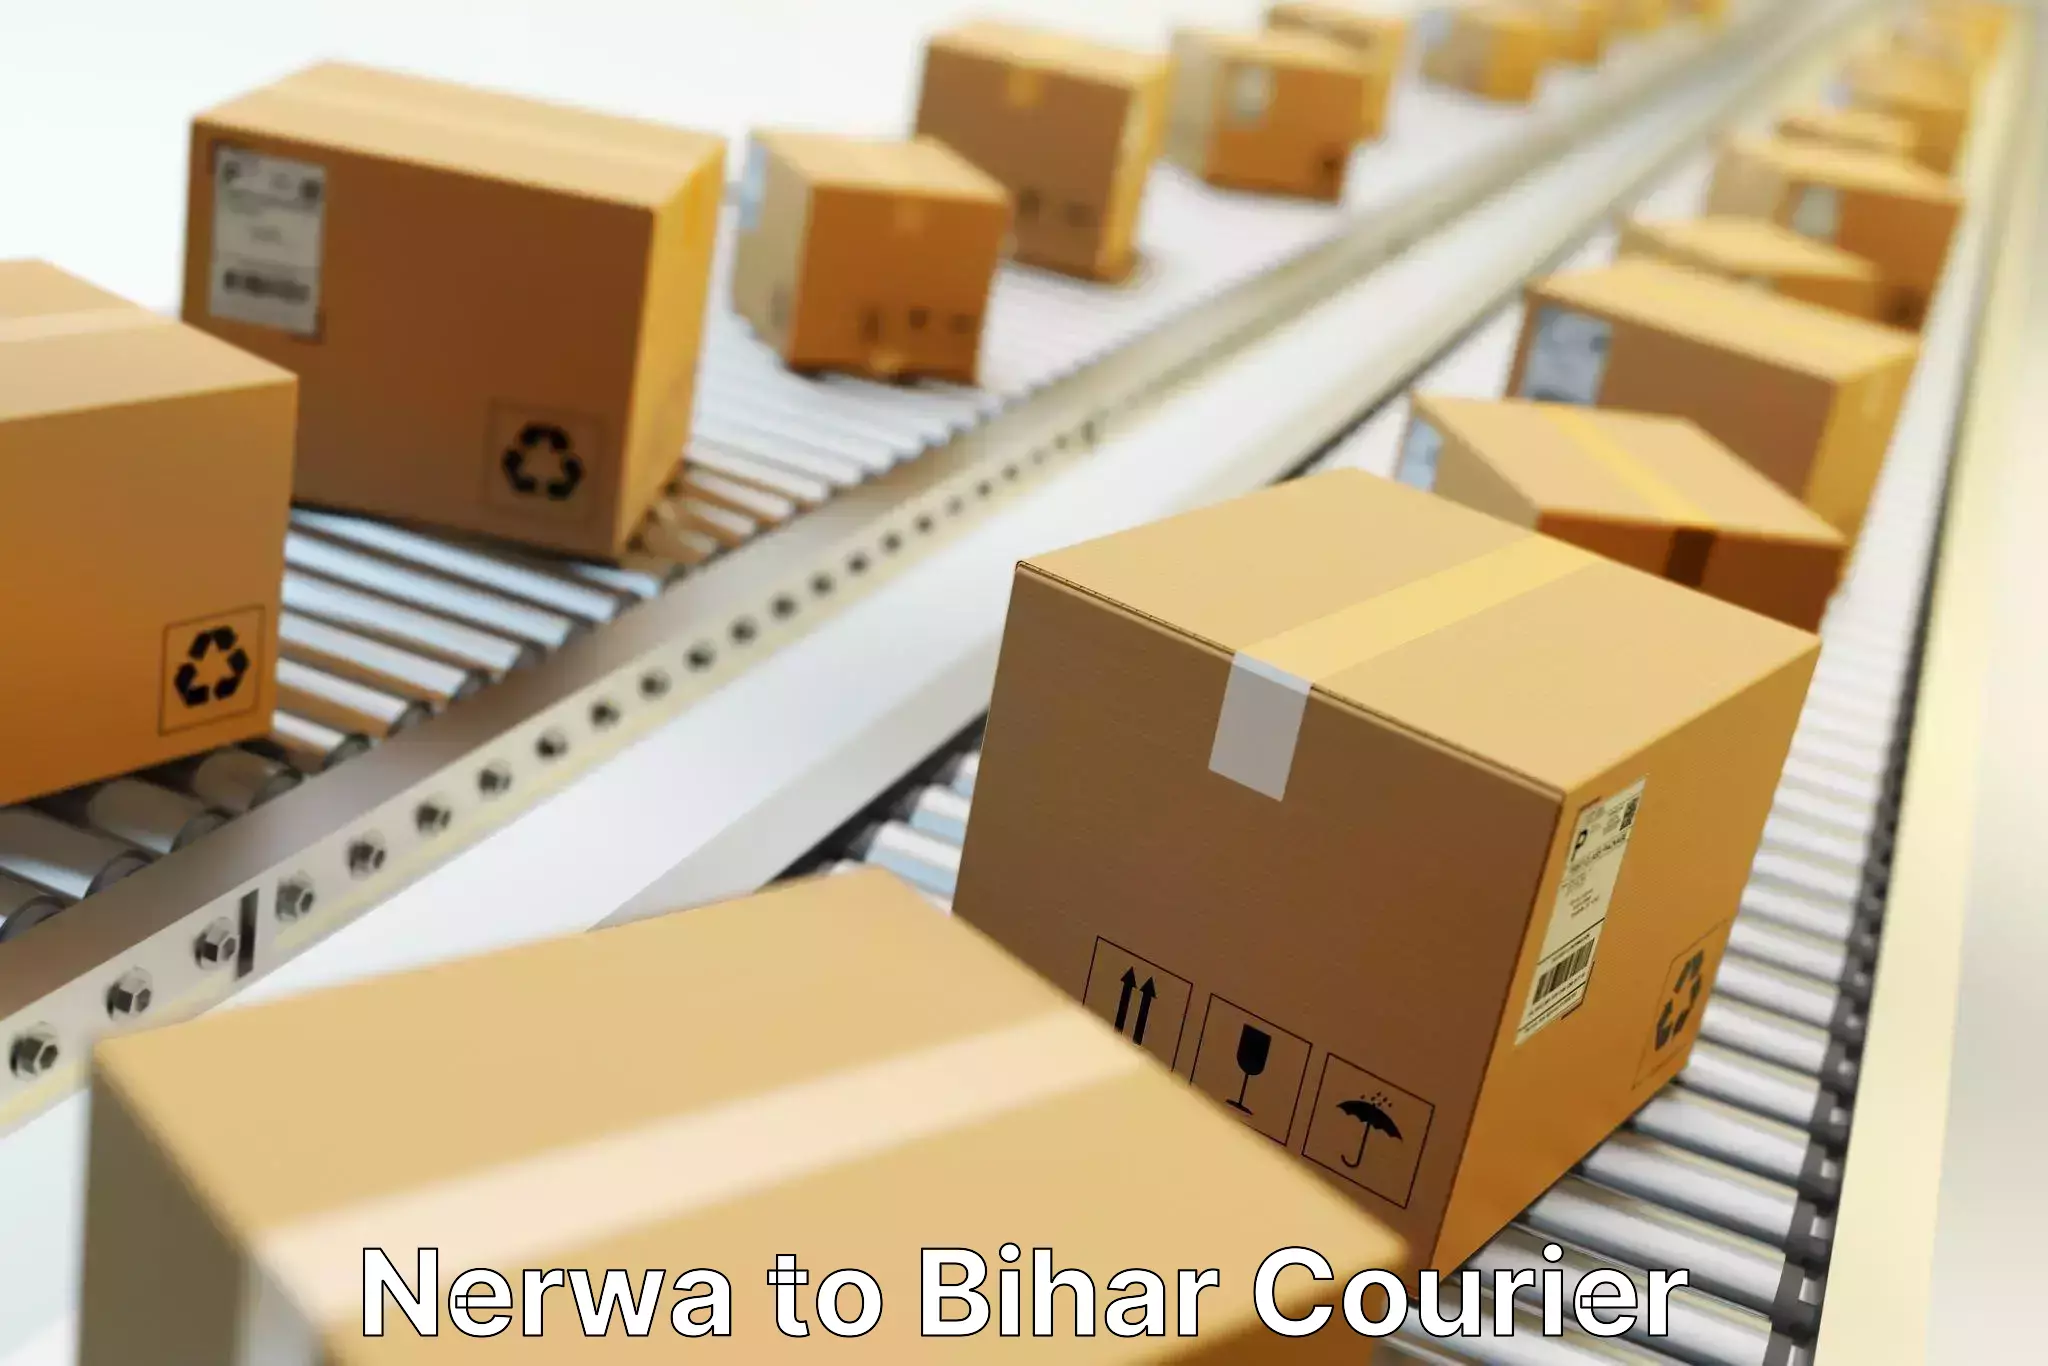 Full-service courier options Nerwa to Bihar